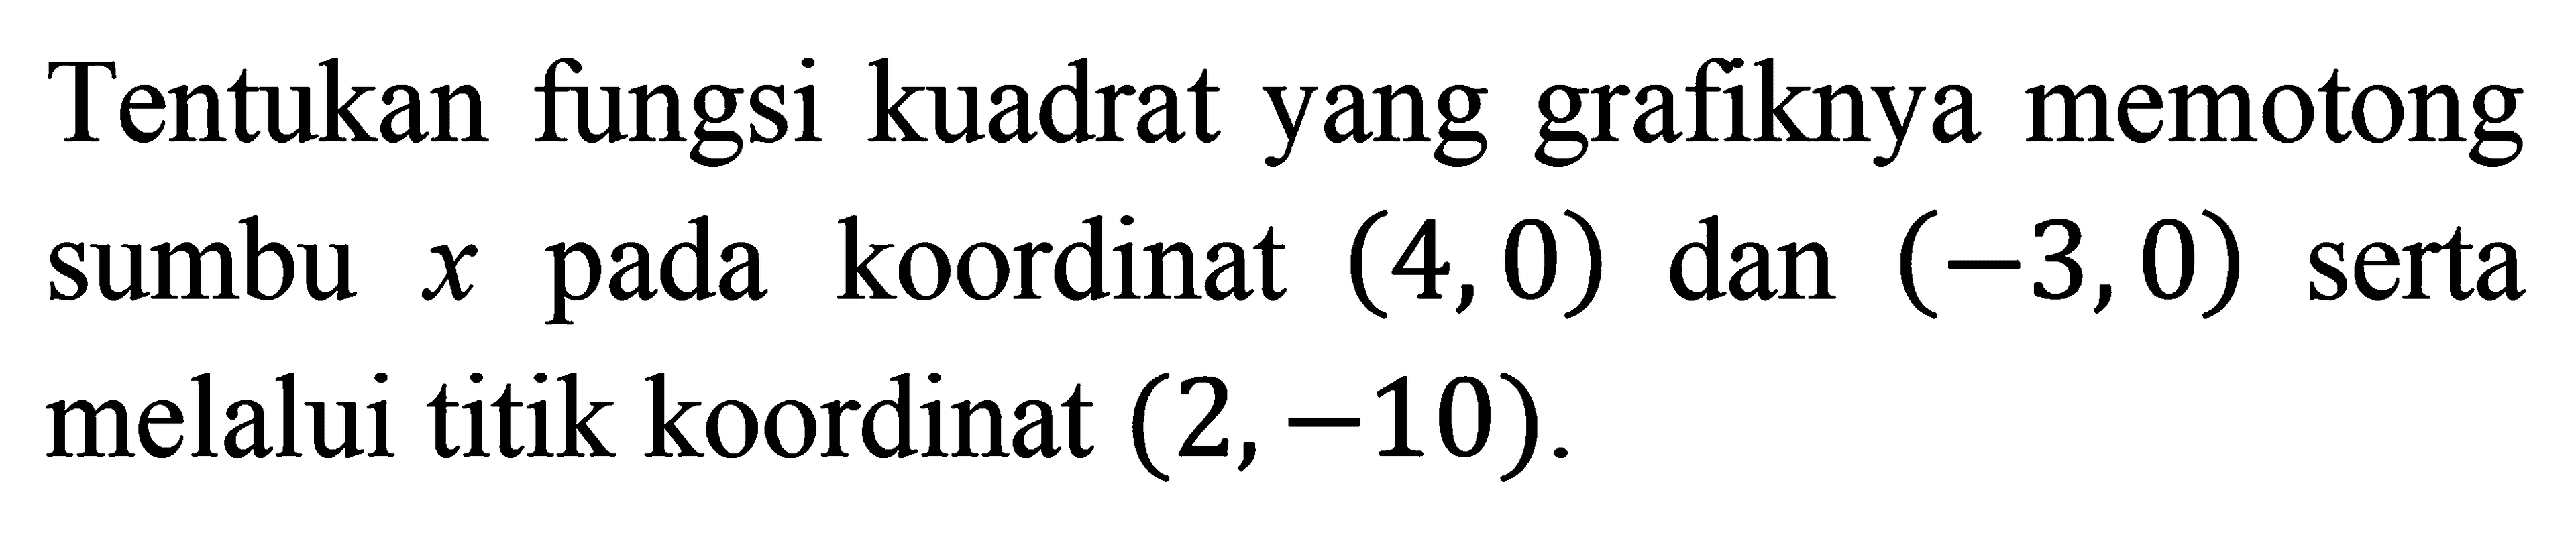 Tentukan fungsi kuadrat yang grafiknya memotong sumbu x pada koordinat (4,0) dan (-3, 0) serta melalui titik koordinat (2, -10).